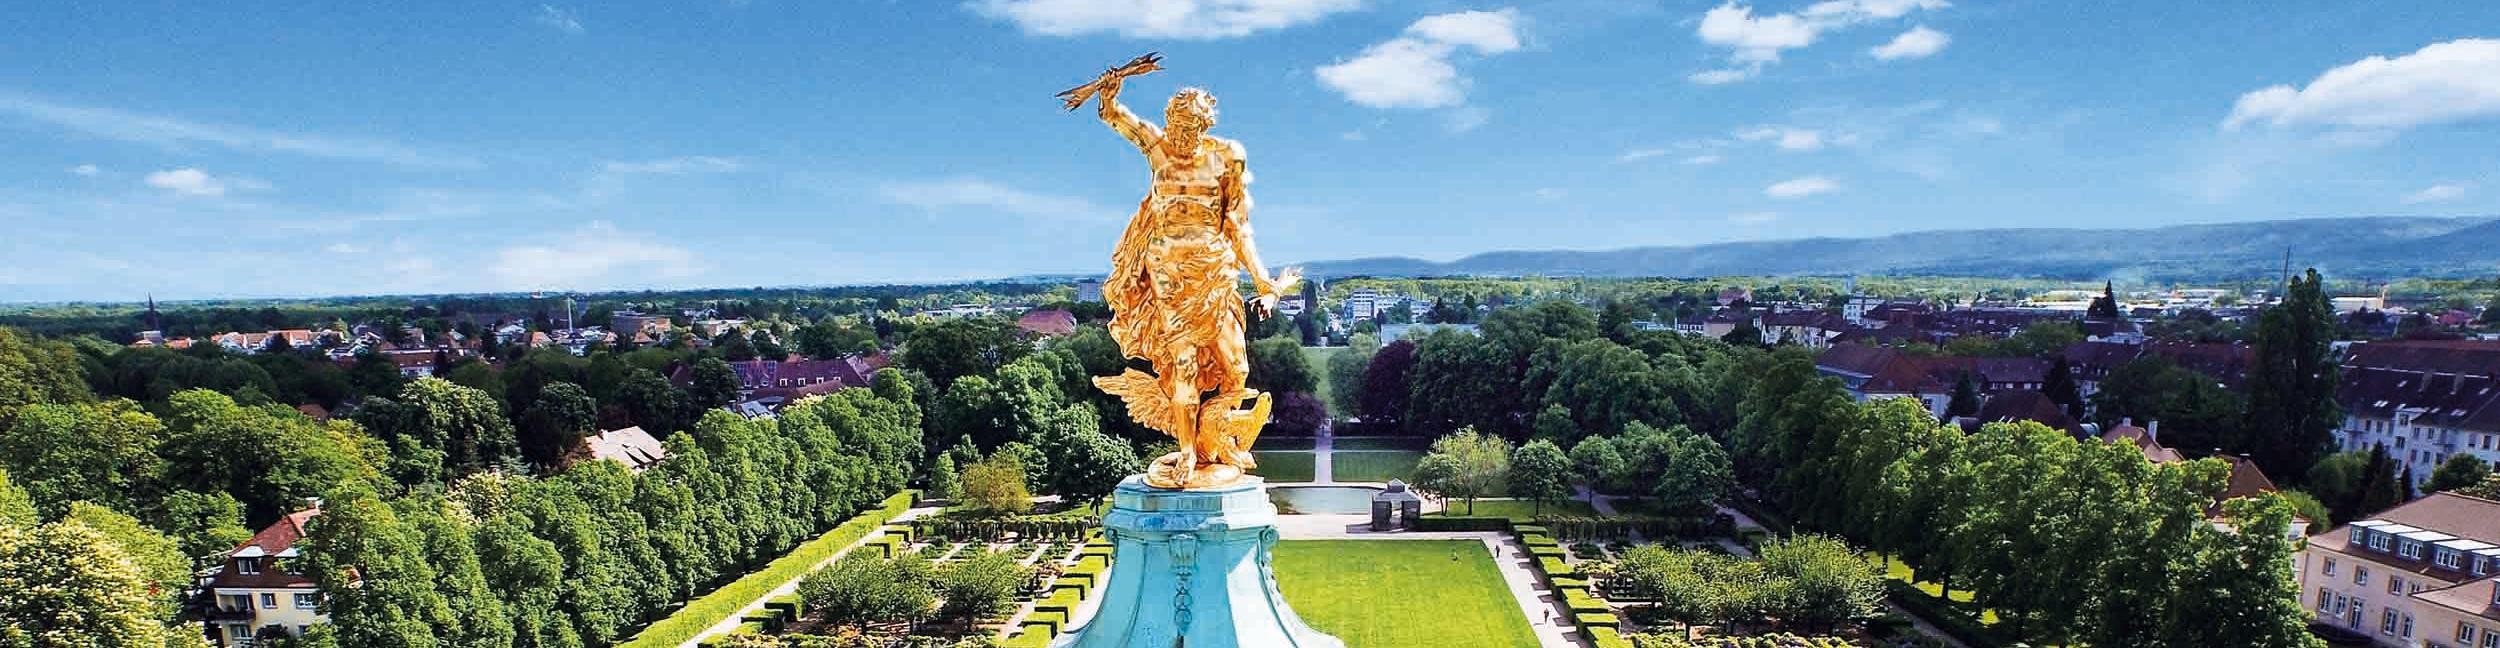 Golden man at the Rastatt Castle